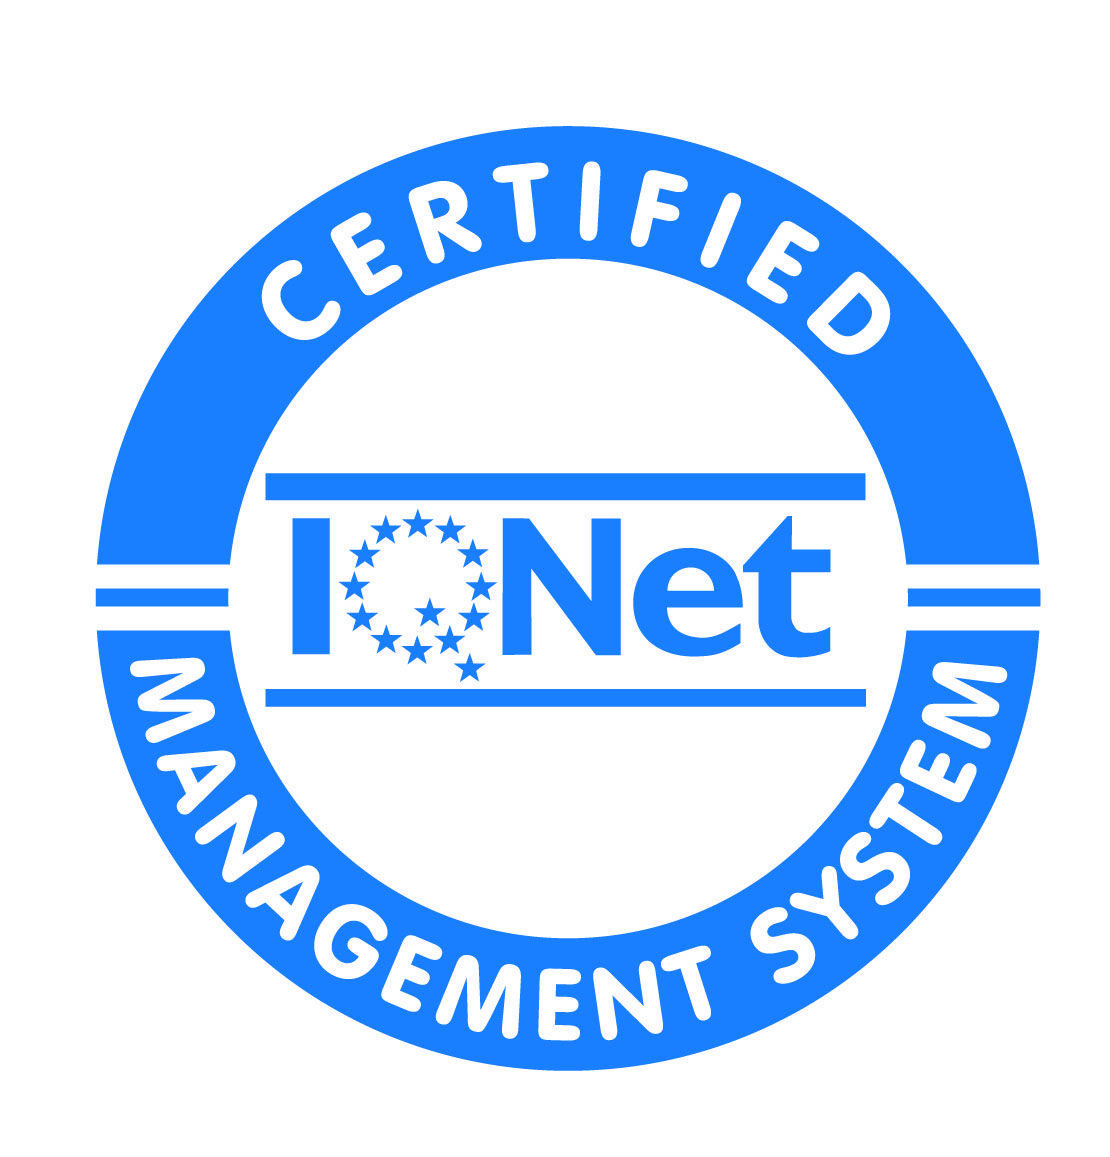 Cirtification Logo - Certification Logo Symbols